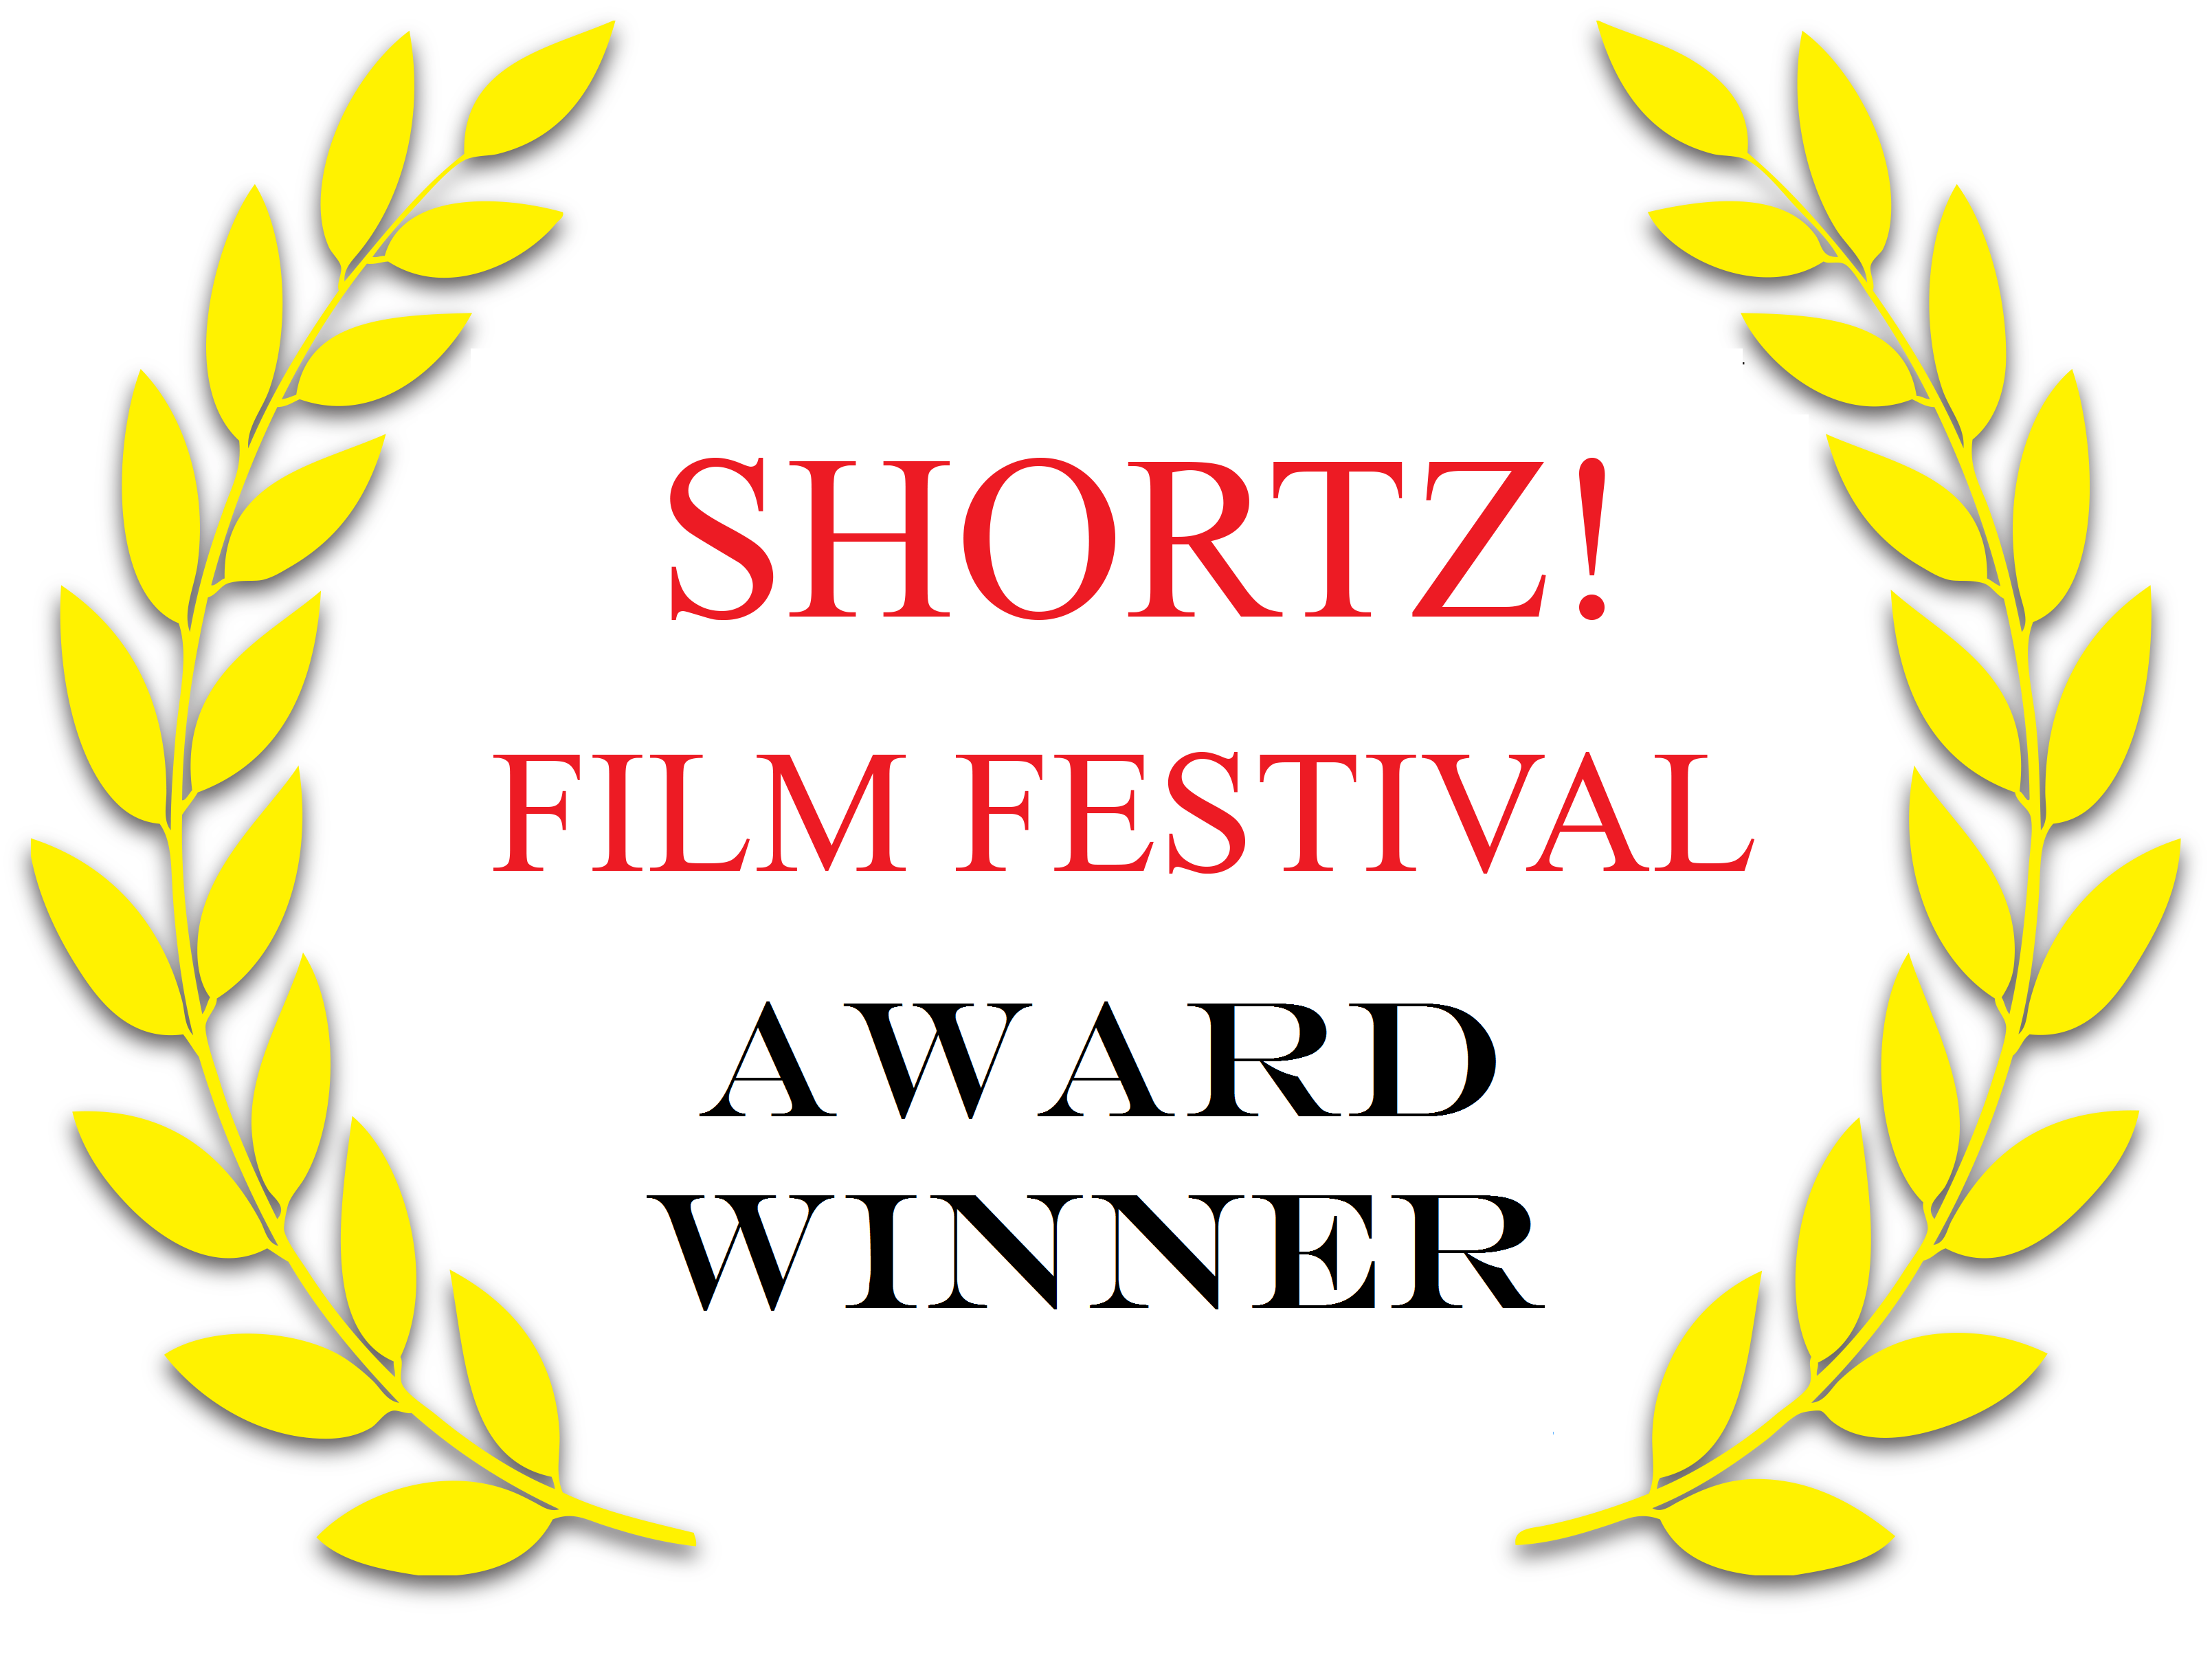 Shortz! Award Winner